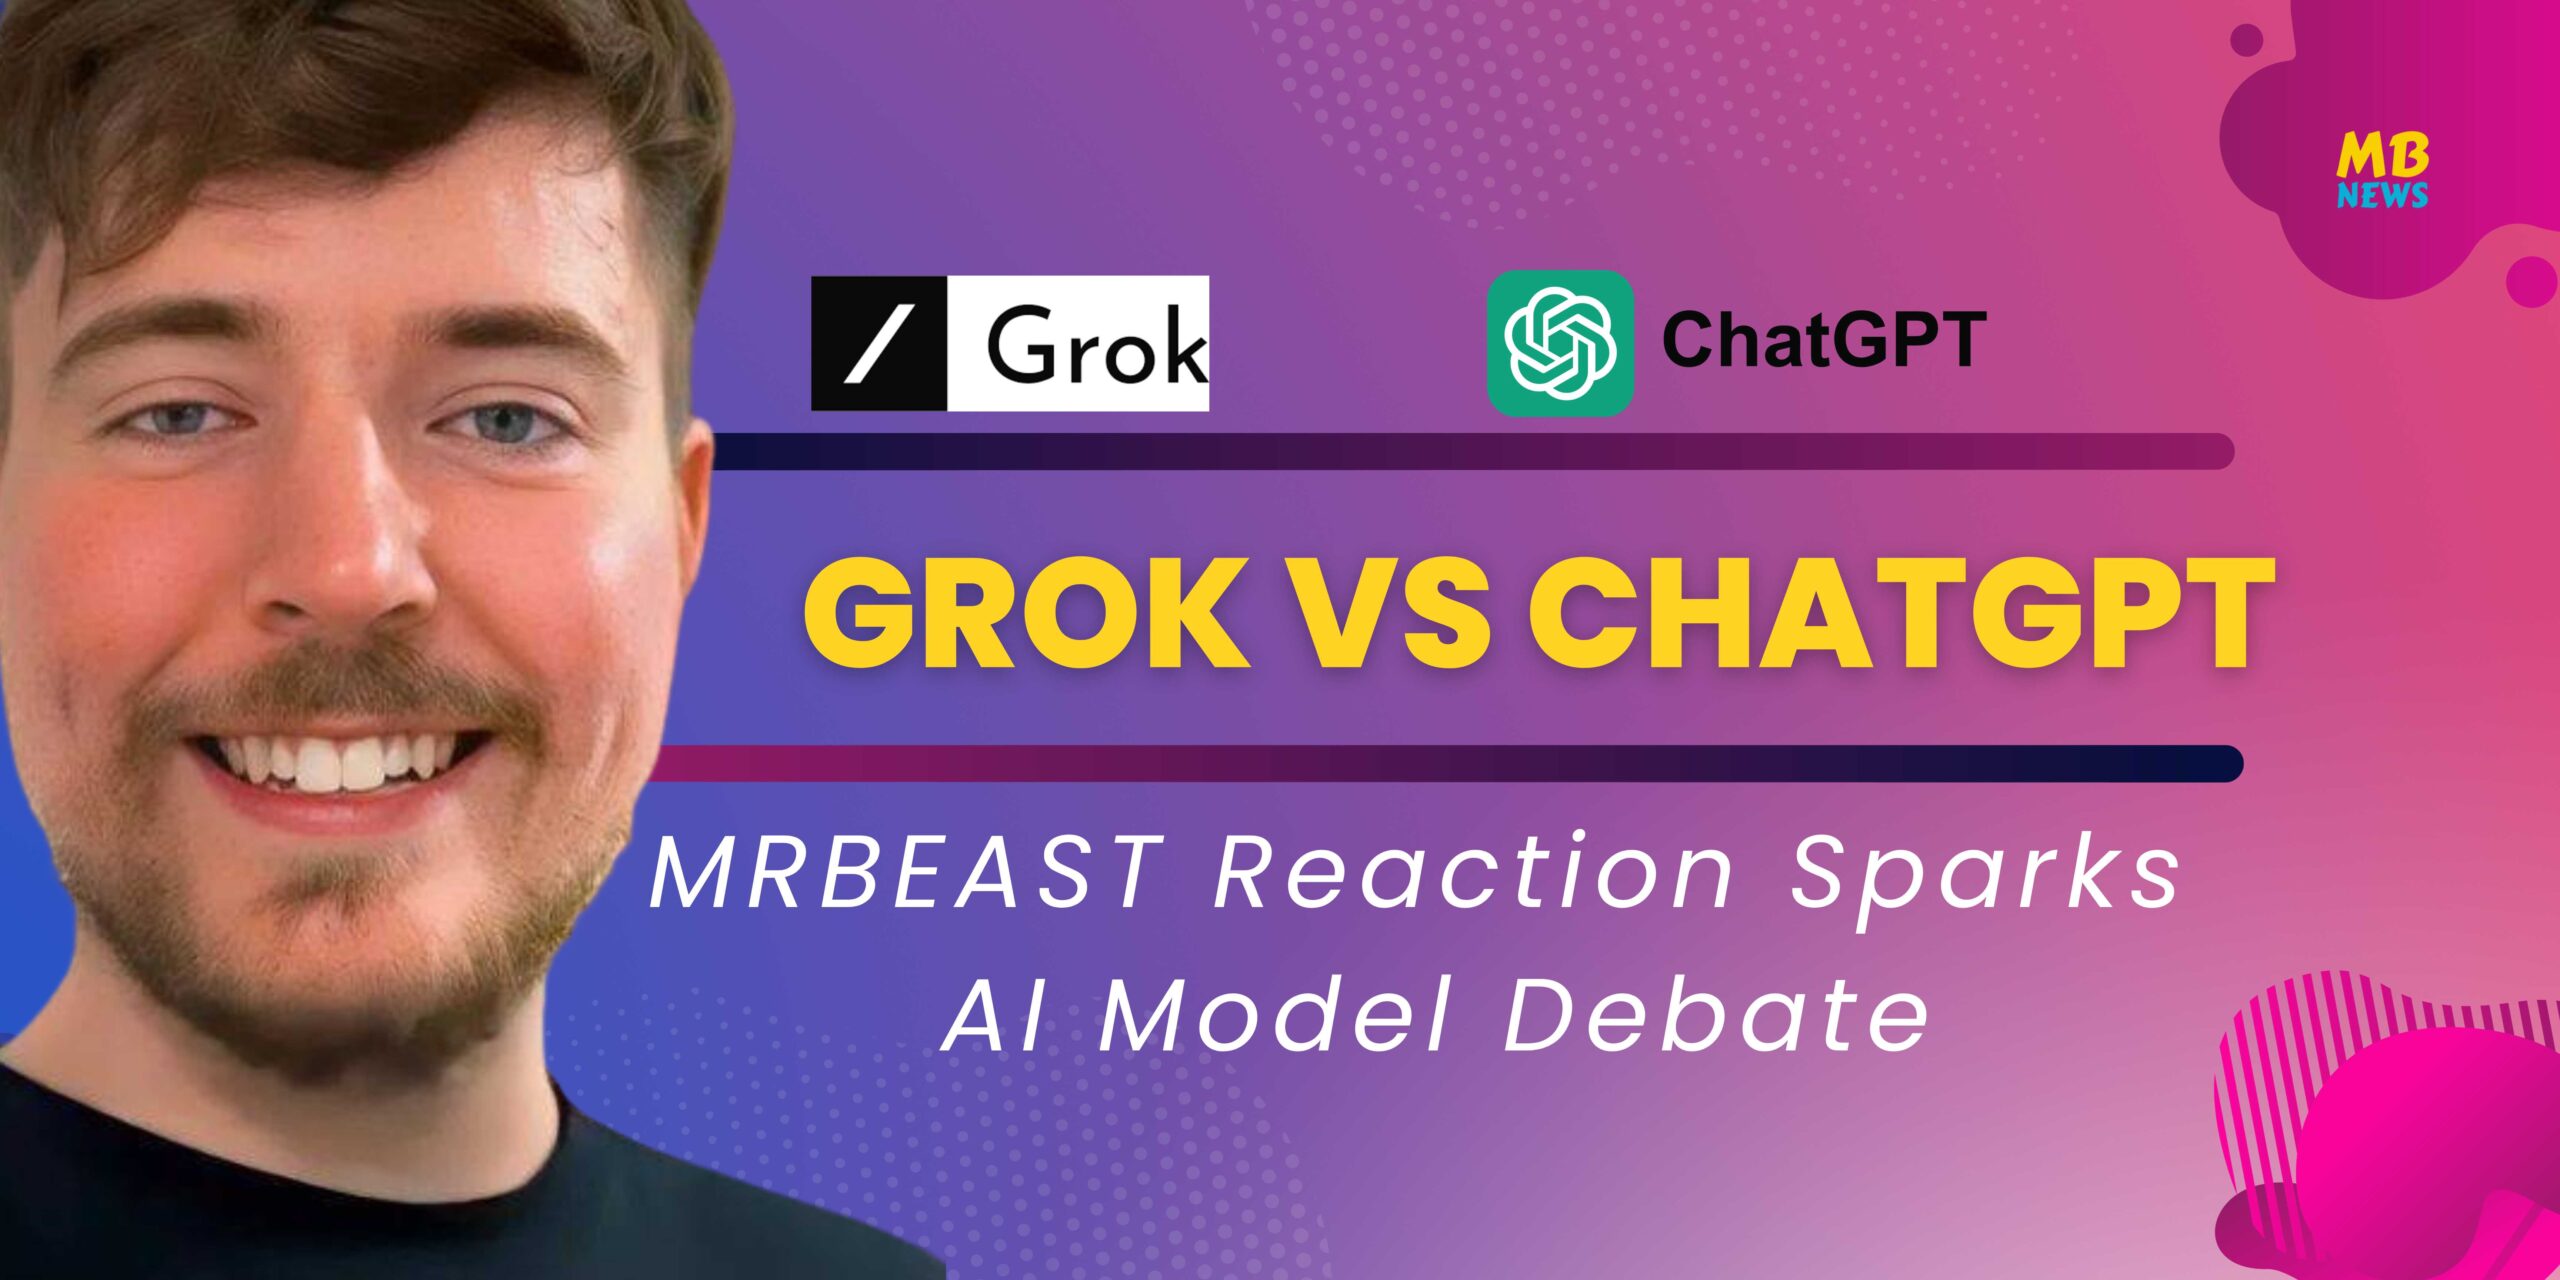 MrBeast's Reaction Sparks AI Model Debate: Grok vs. ChatGPT